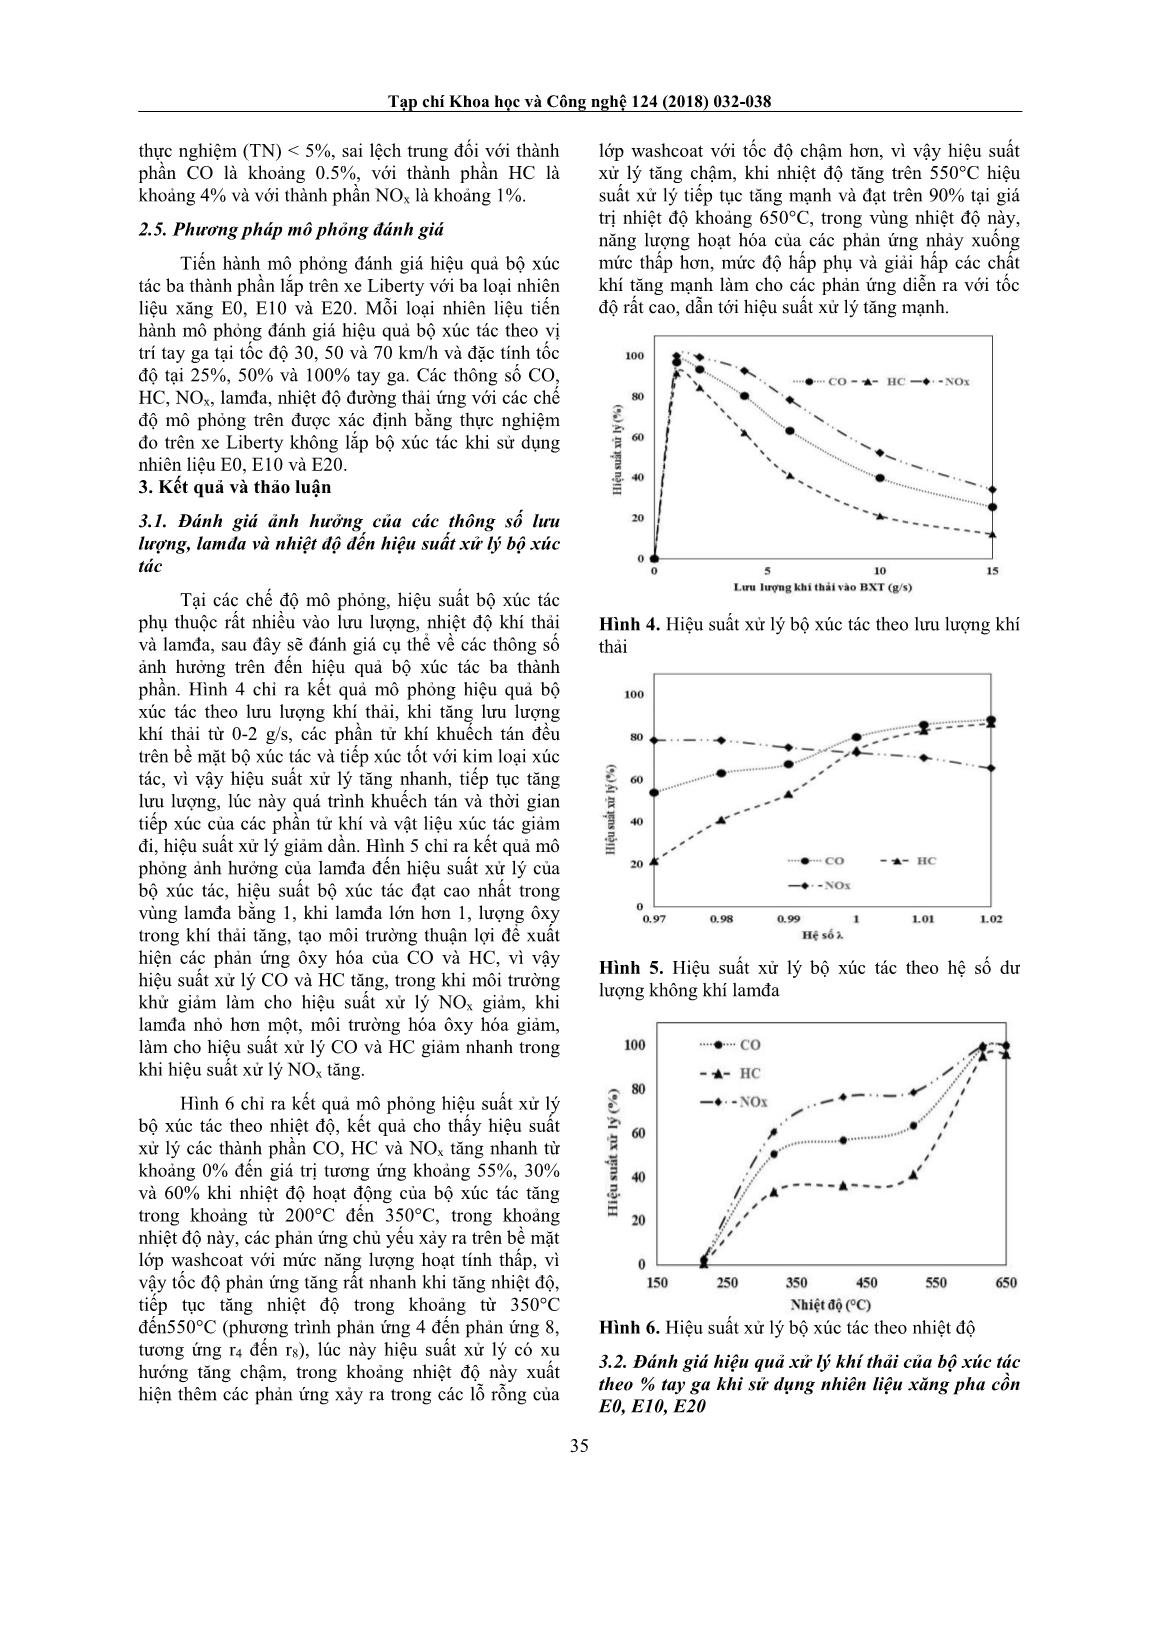 Nghiên cứu mô phỏng đánh giá hiệu quả bộ xúc tác ba thành phần trên động cơ phun xăng điện tử khi sử dụng nhiên liệu xăng pha cồn E10-E20 trang 4